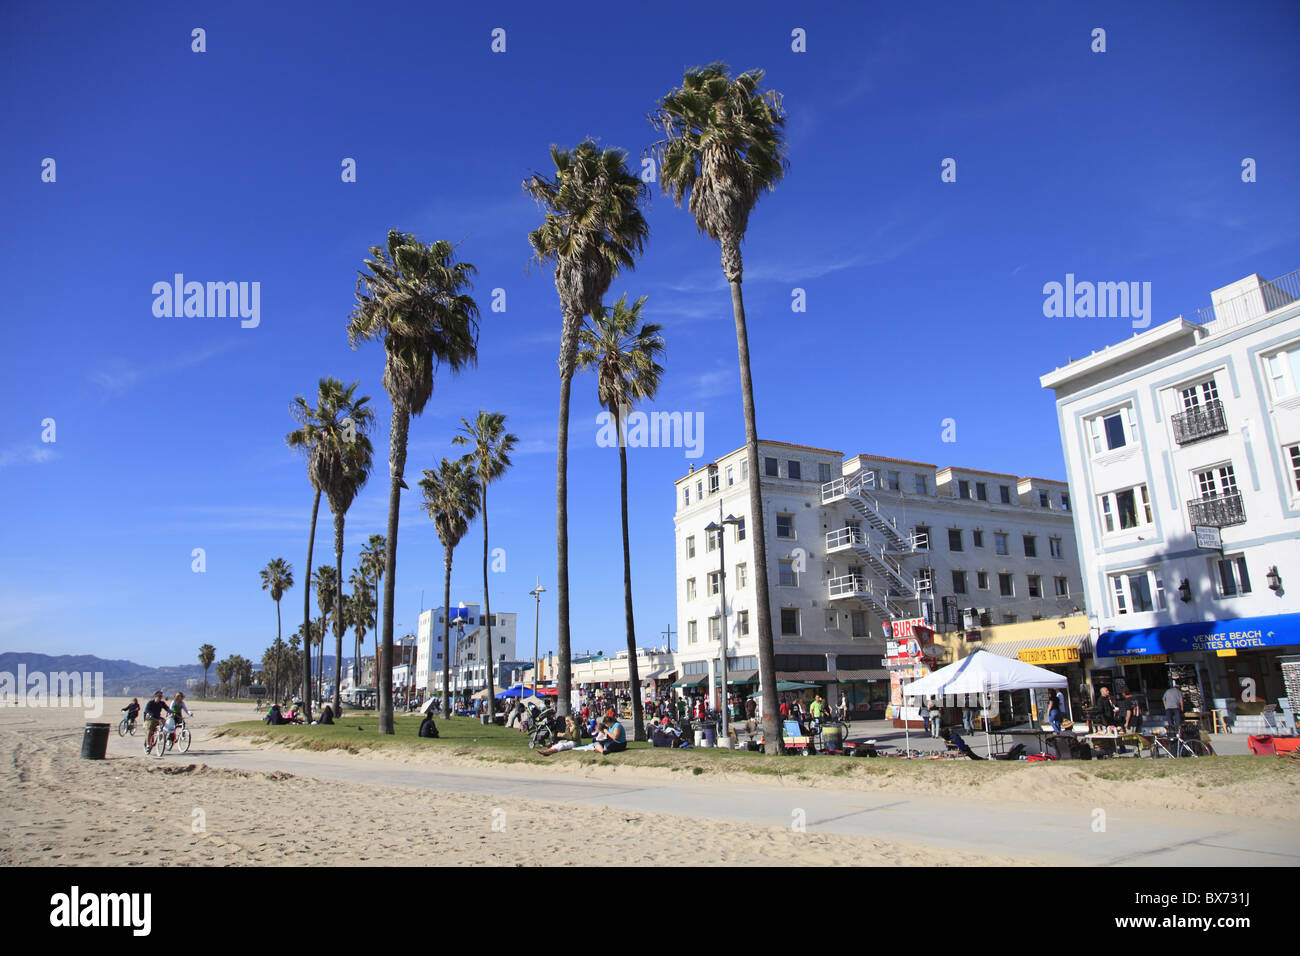 La spiaggia di Venezia, Los Angeles, California, Stati Uniti d'America, America del Nord Foto Stock